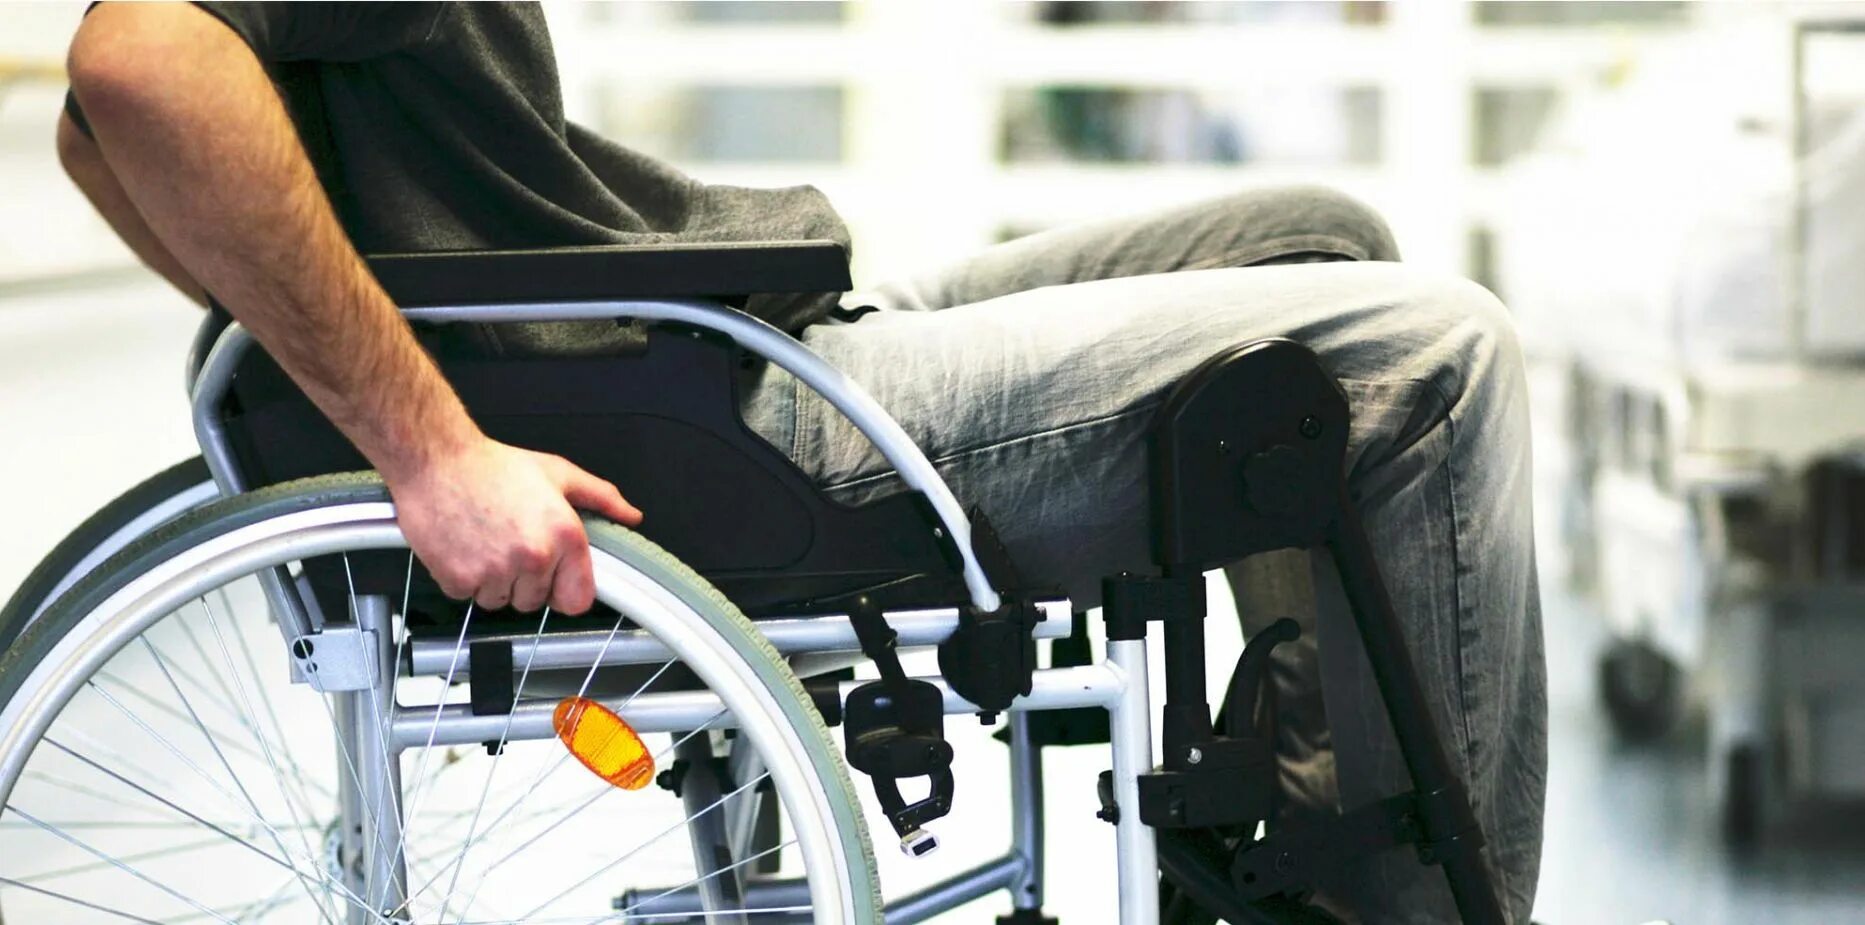 Rollstuhl. Чехлы для инвалидов. Ограниченные возможности колена. Боль в суставах инвалидное кресло. Обидел инвалида